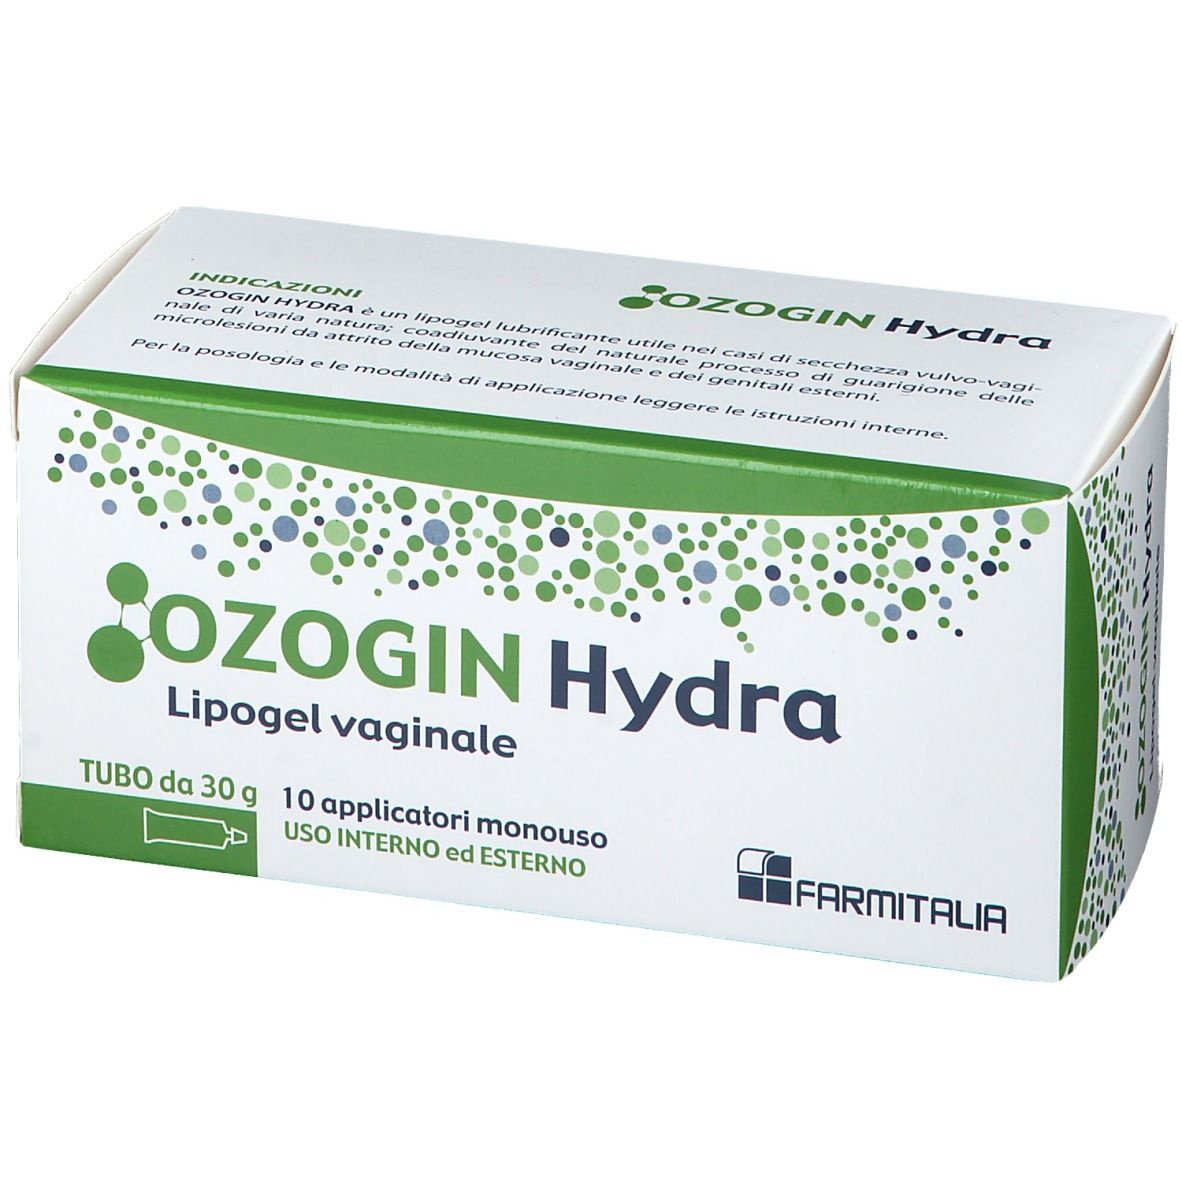 Ozogin Hydra